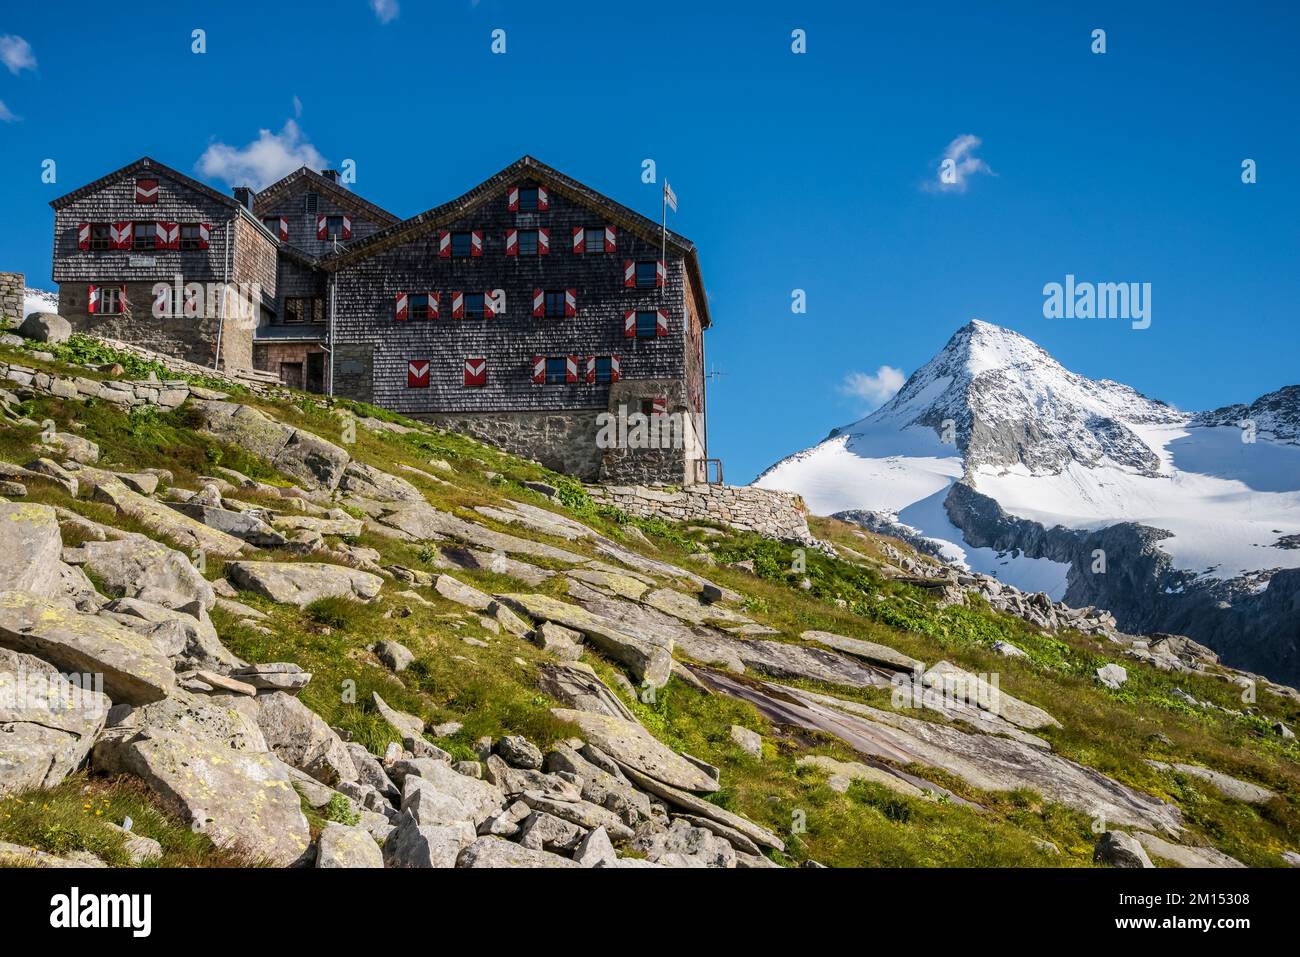 Das Bild zeigt die österreichische Alpenklub OeAV Sektion Salzburg besitzt Kursinger Hut, benannt nach einem lokalen Politiker, der beim ersten Aufstieg des Großen Venediger in der Venediger Gruppe des Berges, bekannt als Alpenvenediger, maßgeblich beteiligt war. Stockfoto